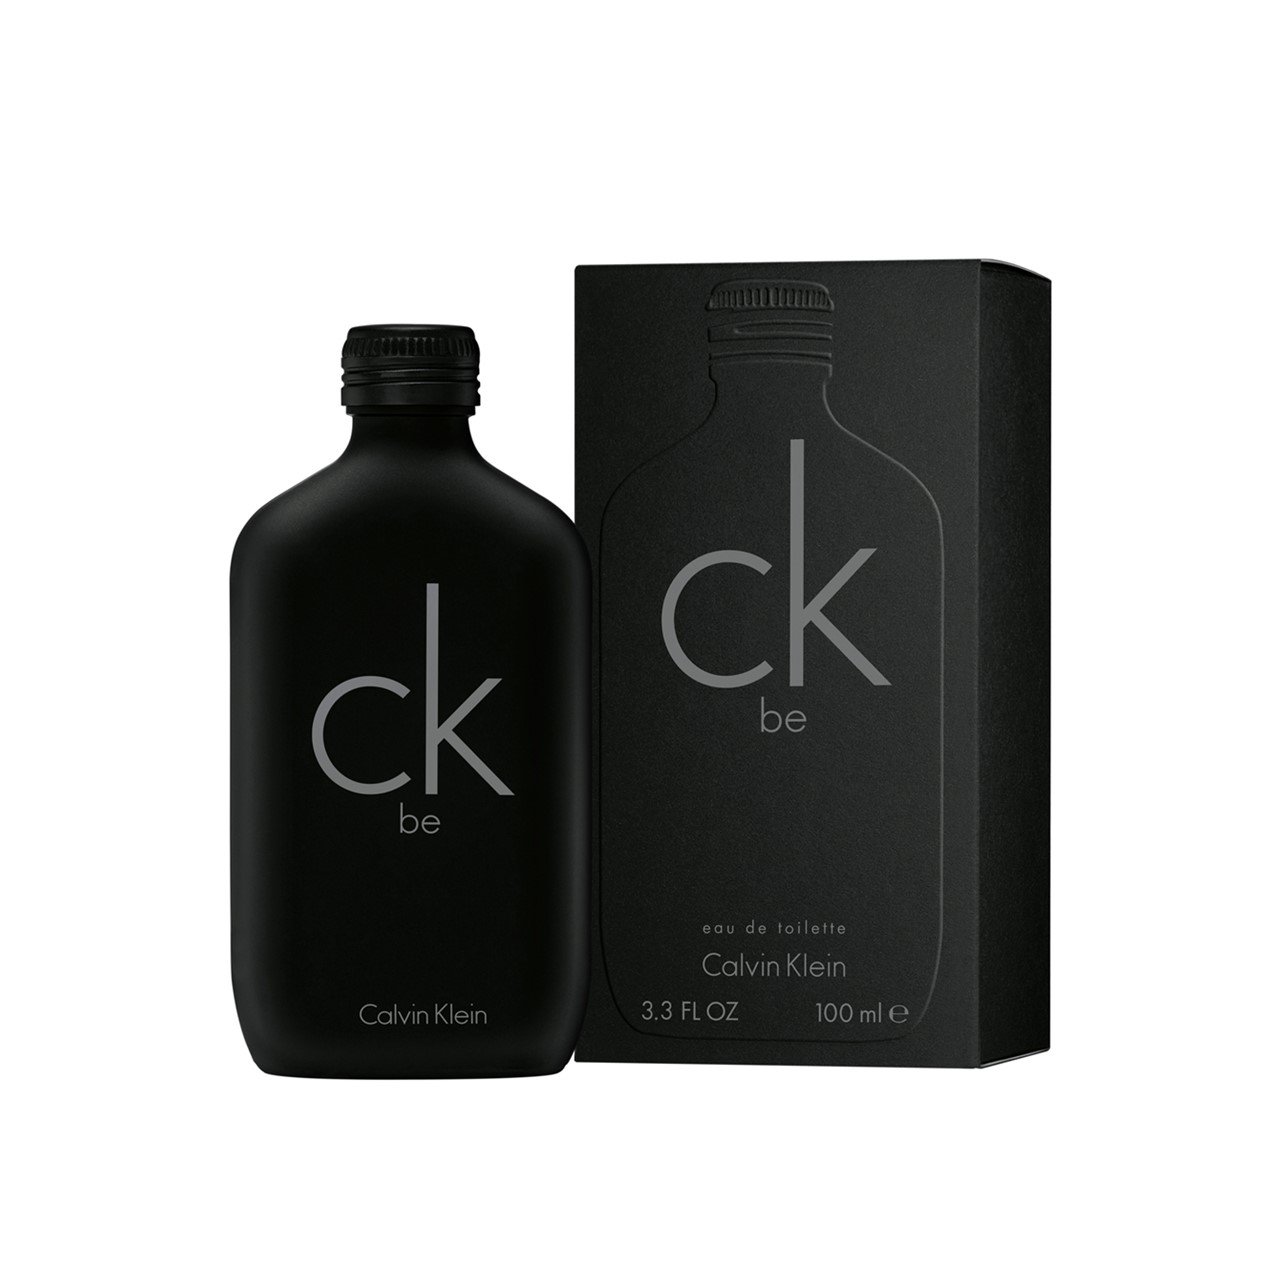 Todo el tiempo menta Existe Comprar Calvin Klein CK Be Eau de Toilette 100ml · España